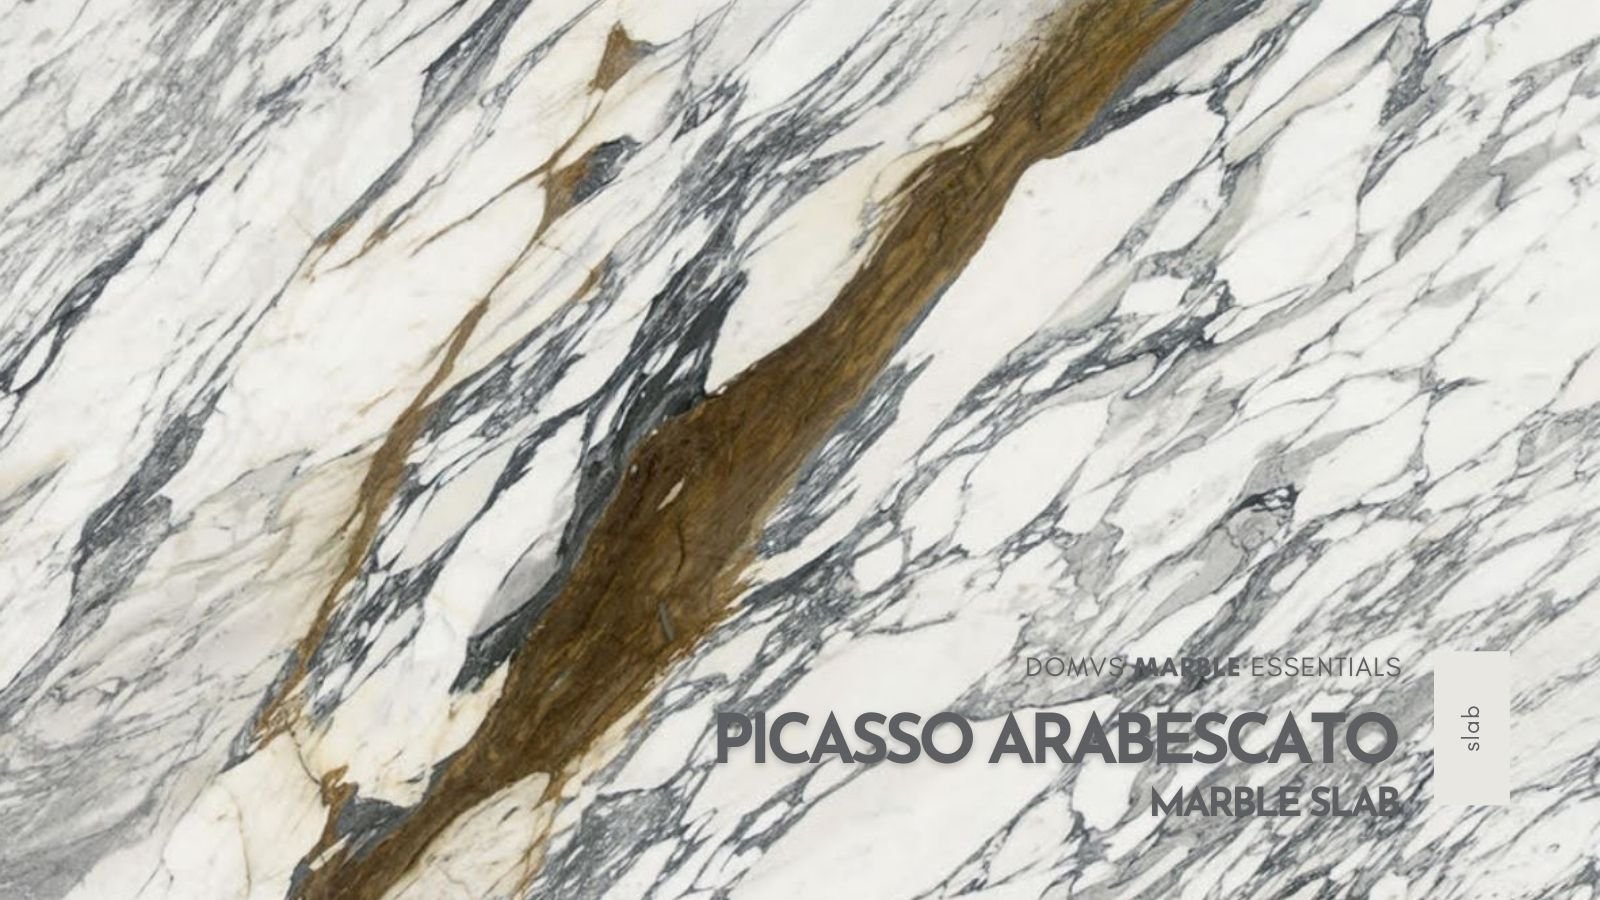 Picasso Arabescato Marble Slab F